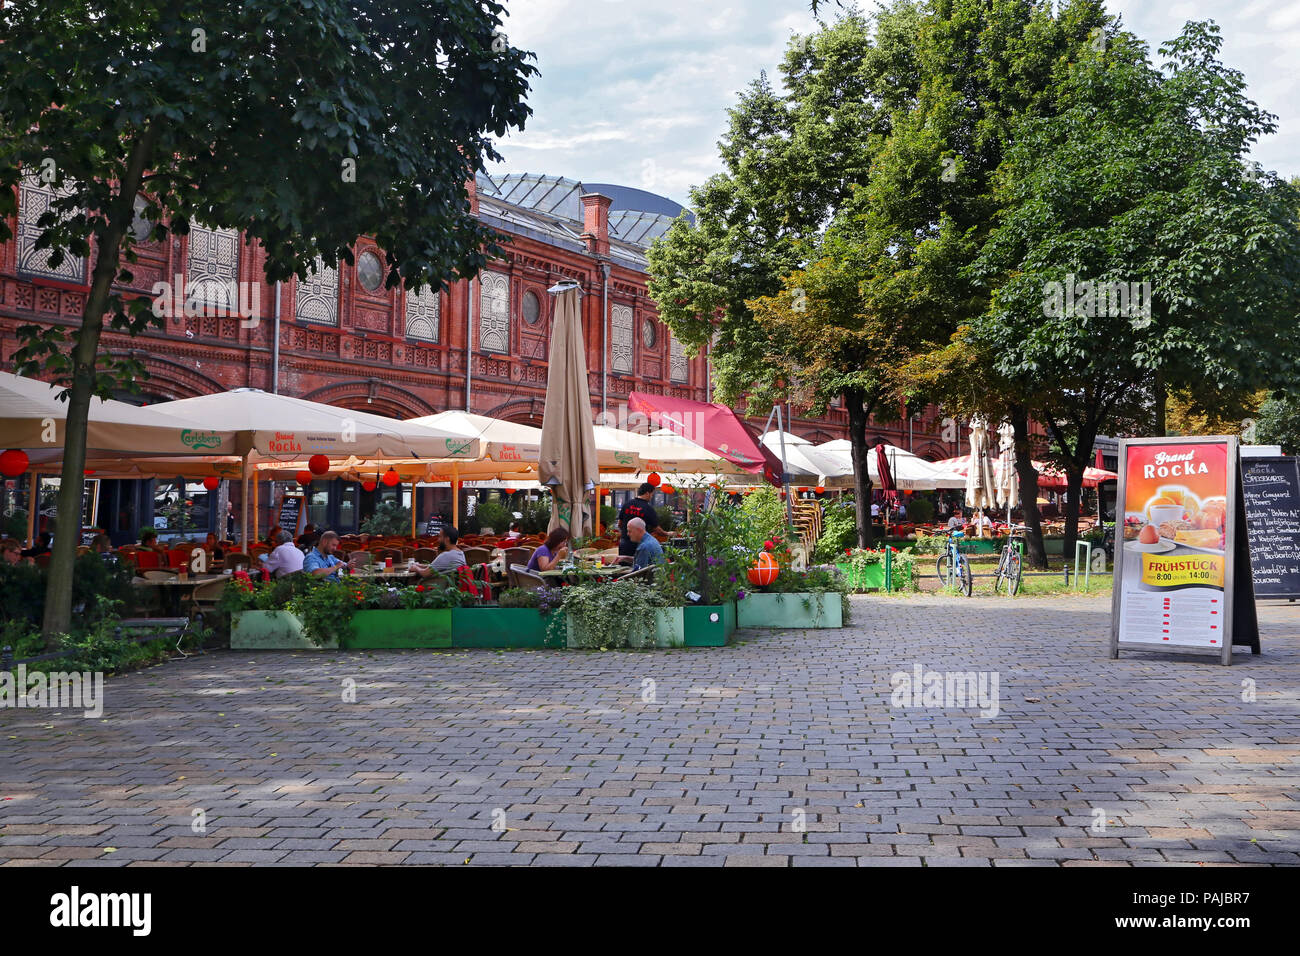 BERLIN, GERMANY - JULY 25: street view in Hackescher Market on July 25, 2015 in Berlin, Germany. Stock Photo